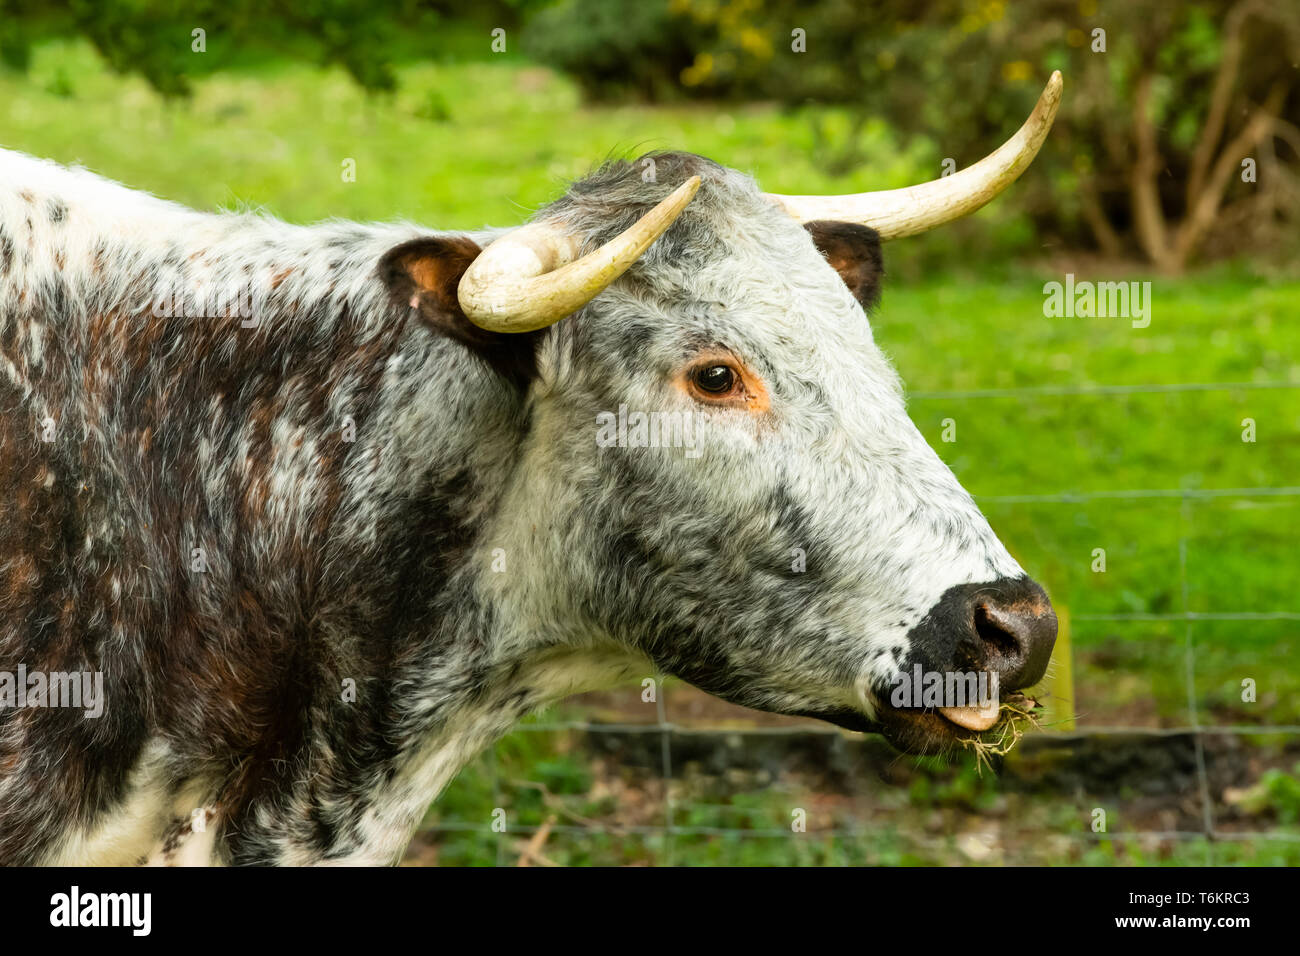 Gros plan d'une vache Longhorn, une ancienne race de bétail sur les pâturages dans le Yorkshire du Nord. Faisant face à droite, de mâcher de la CUD. Paysage. Banque D'Images